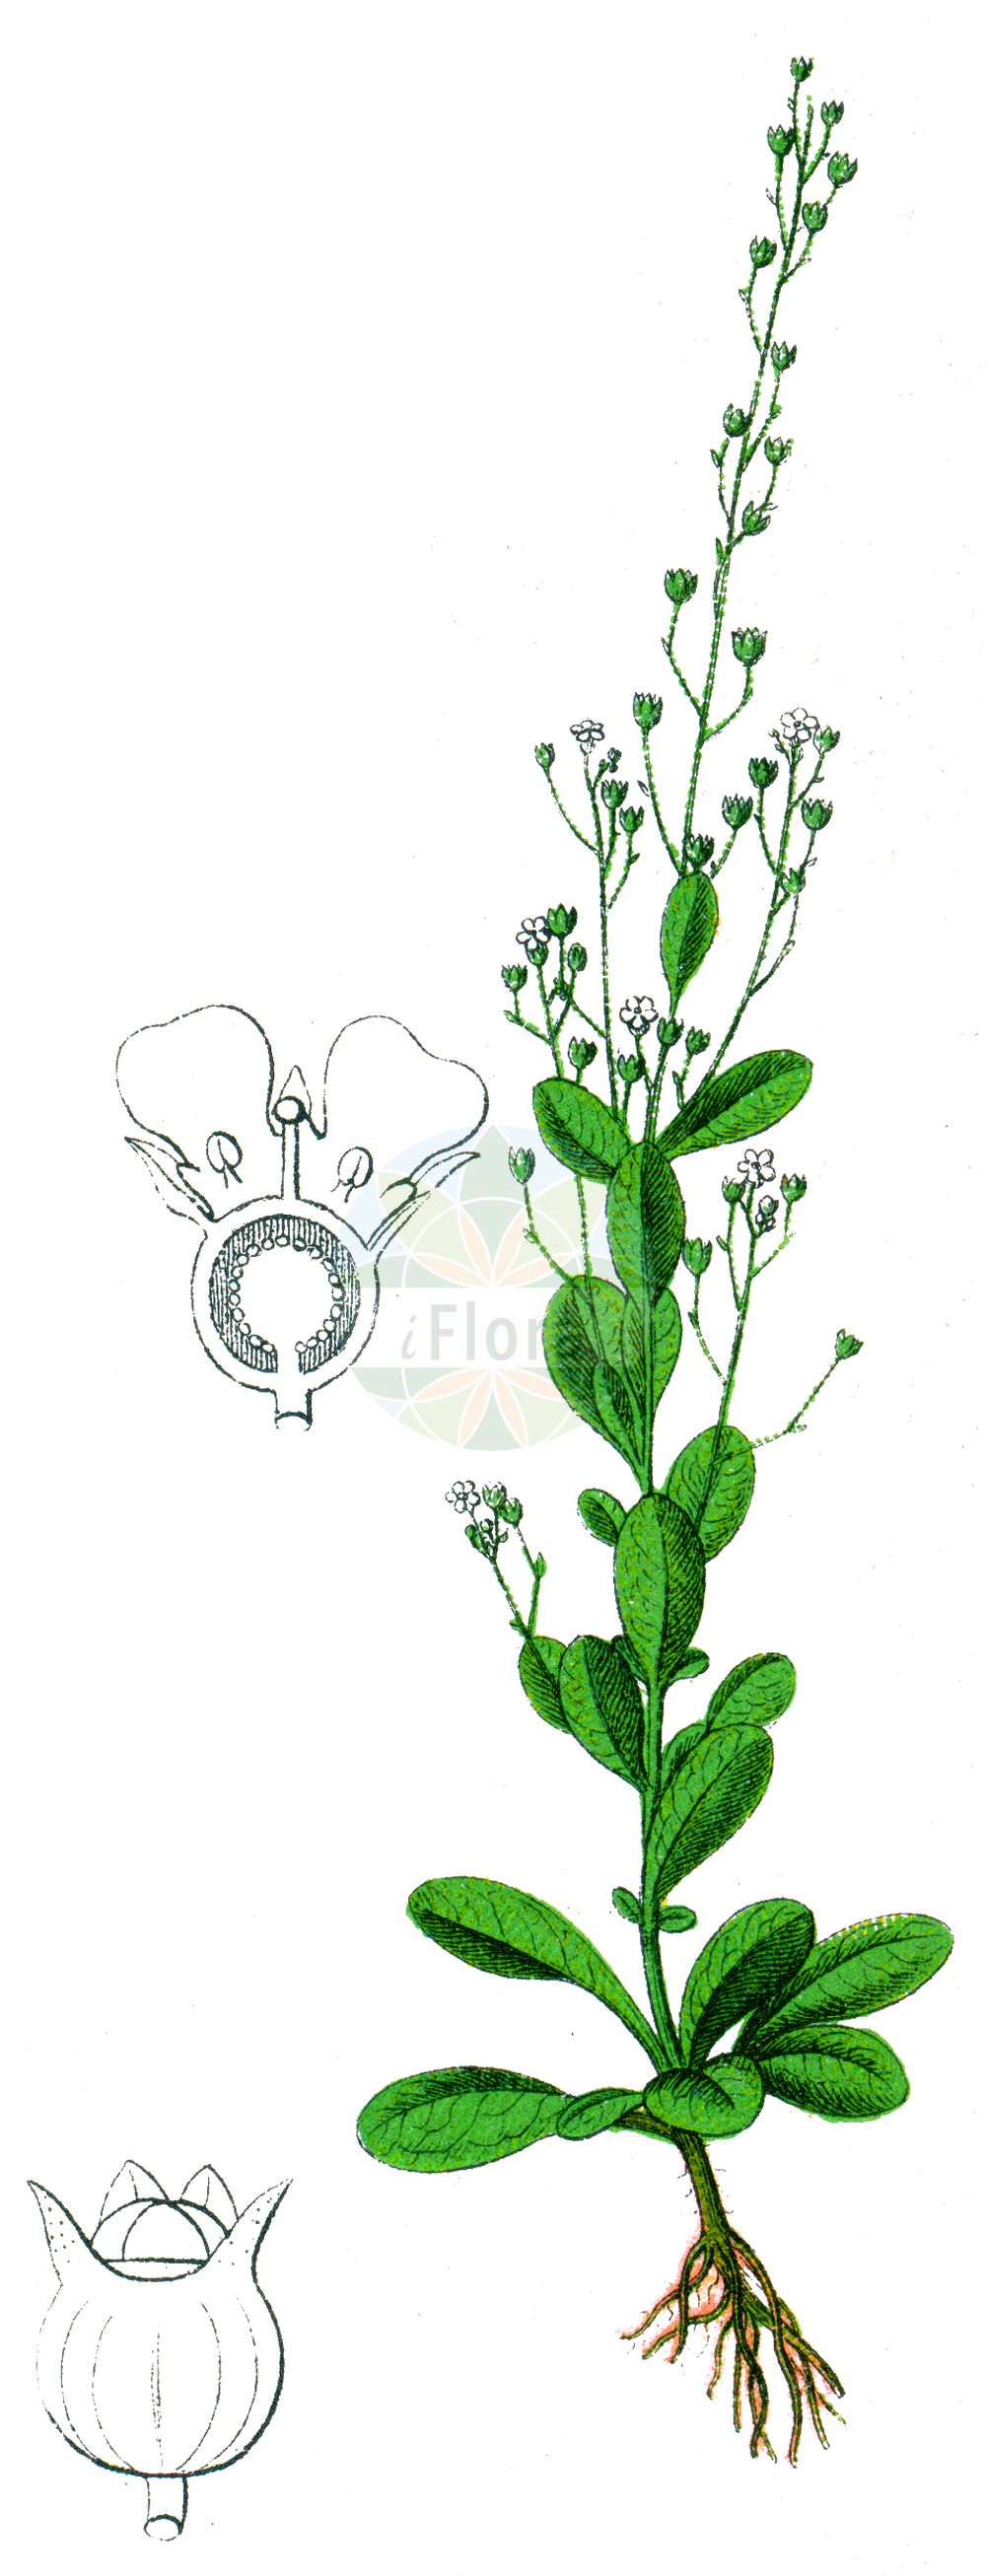 Historische Abbildung von Samolus valerandi (Salz-Bunge - Brookweed). Das Bild zeigt Blatt, Bluete, Frucht und Same. ---- Historical Drawing of Samolus valerandi (Salz-Bunge - Brookweed). The image is showing leaf, flower, fruit and seed.(Samolus valerandi,Salz-Bunge,Brookweed,Samolus valerandi,Salz-Bunge,Brookweed,Seaside Brookweed,Samolus,Salzbunge,Brookweed,Primulaceae,Schlüsselblumengewächse,Primrose family,Blatt,Bluete,Frucht,Same,leaf,flower,fruit,seed,Sturm (1796f))